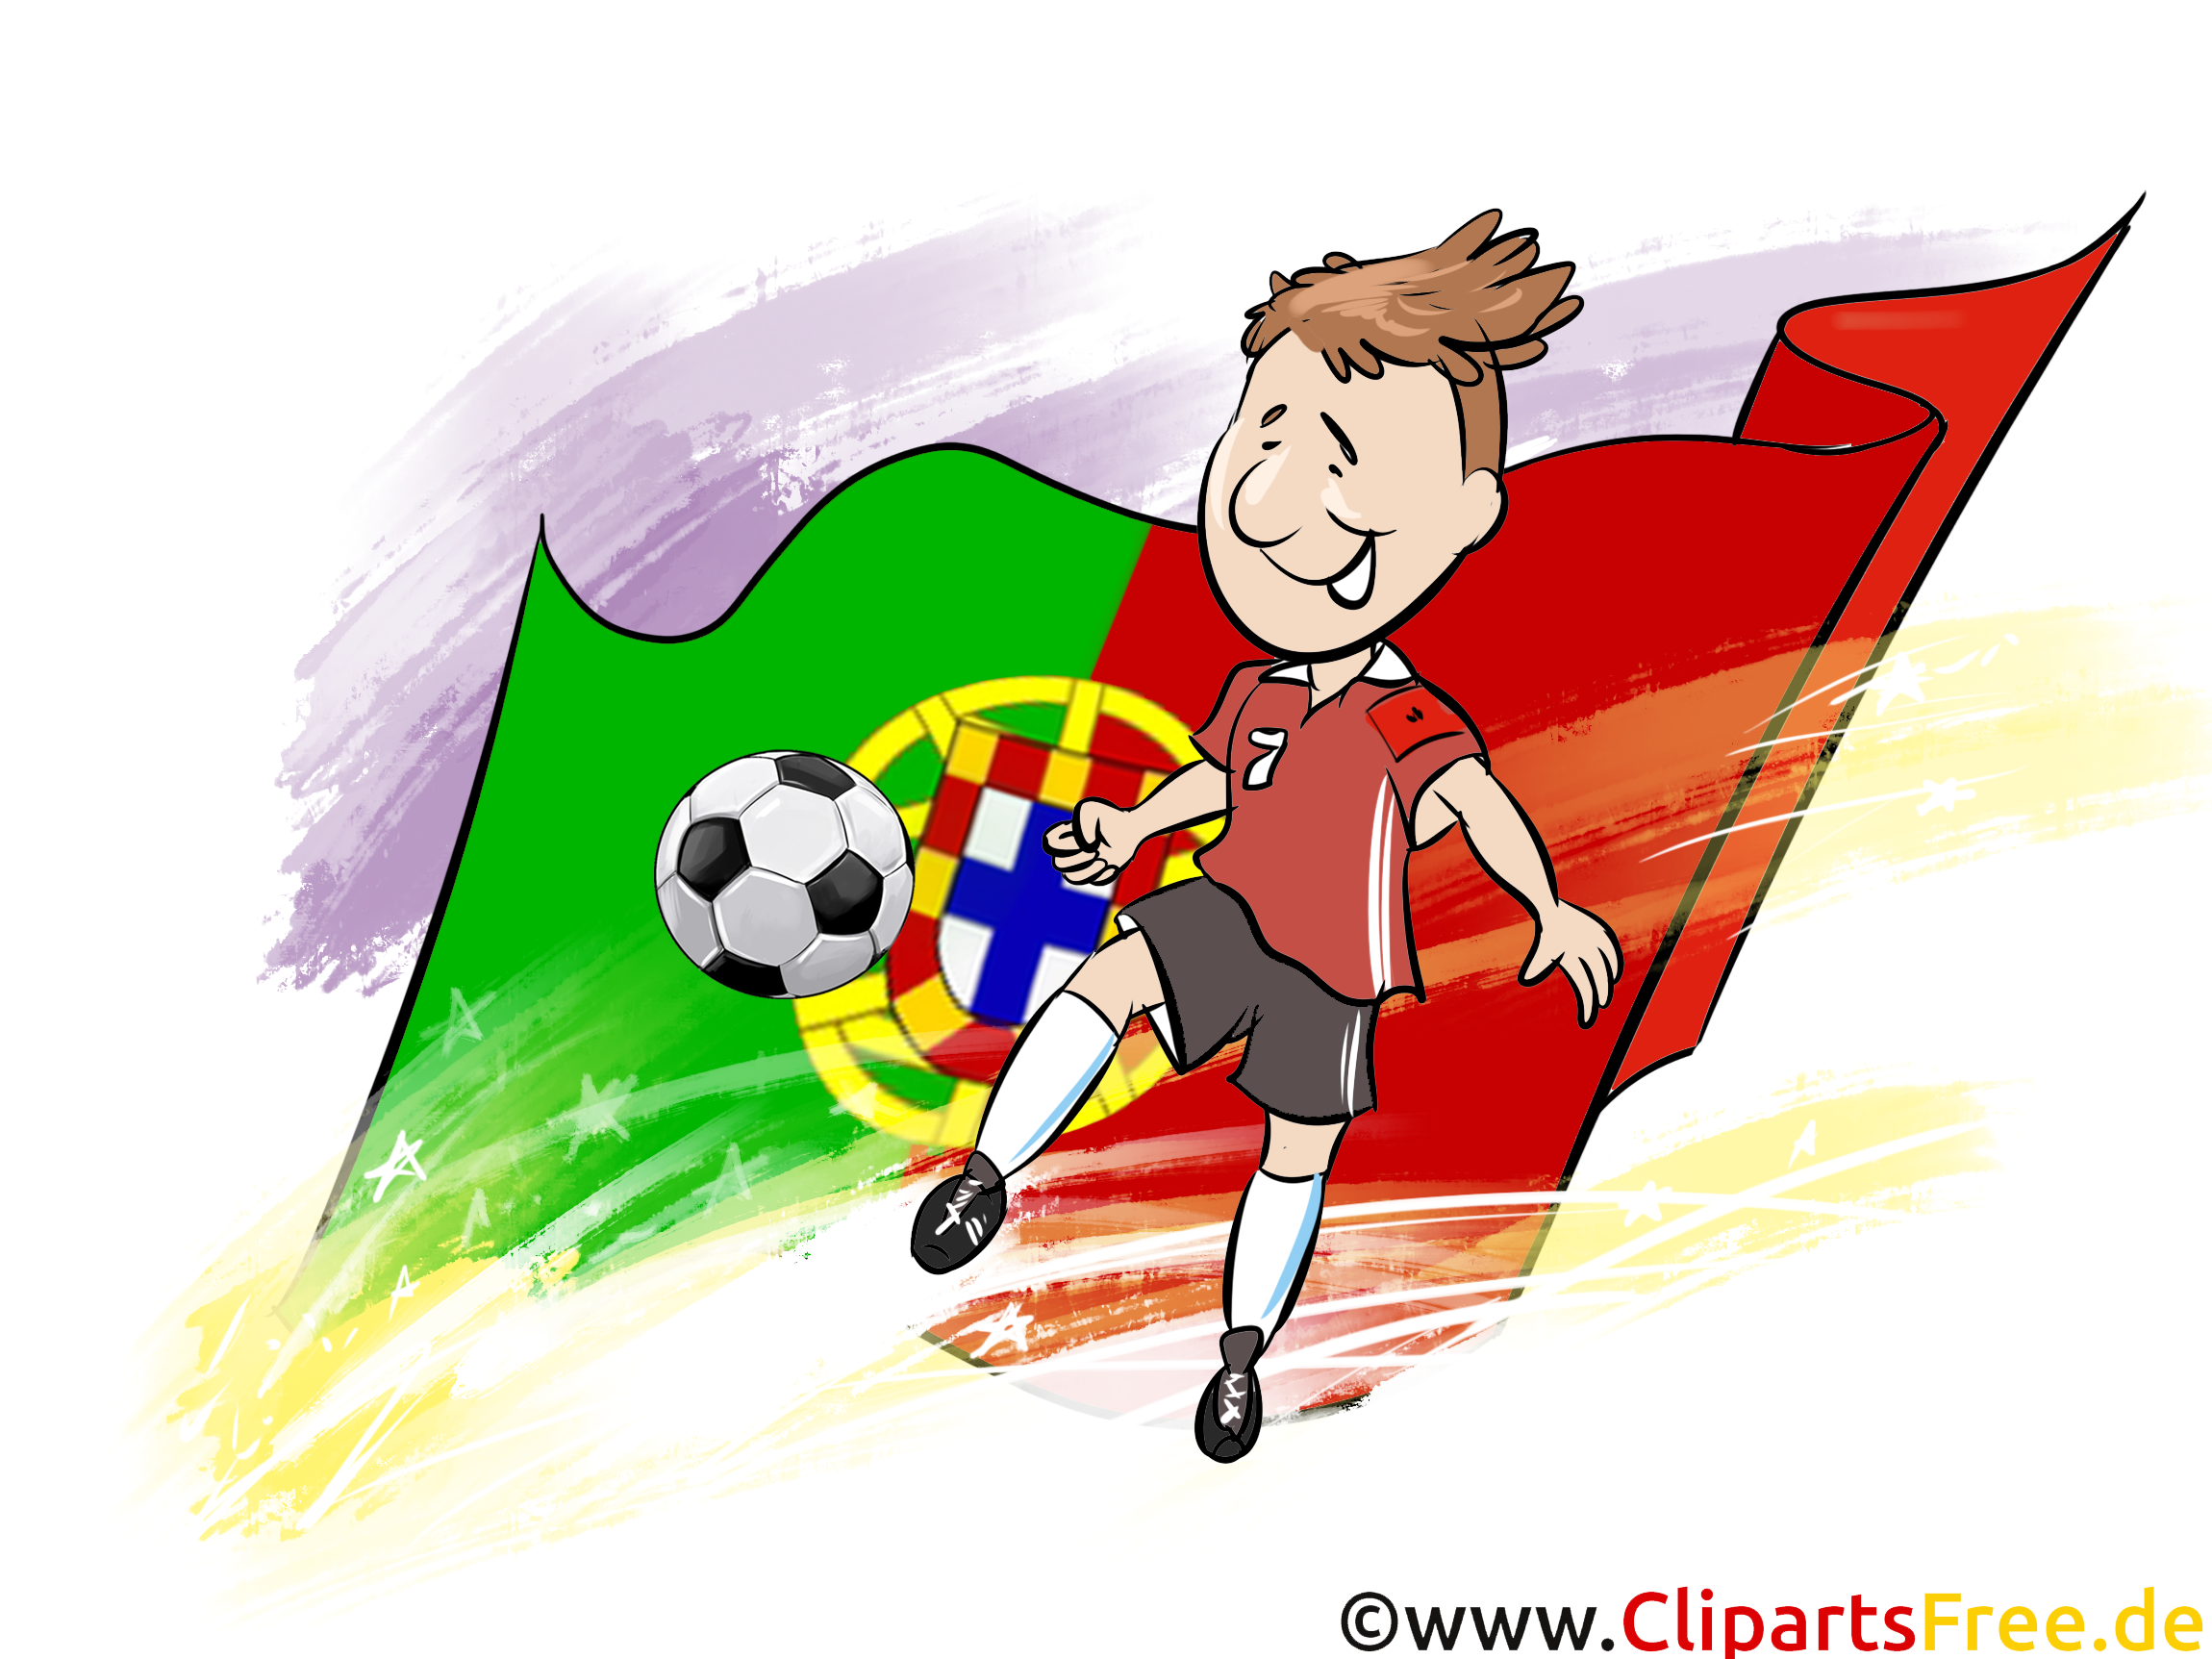 Portugal Images Football gratuit pour télécharger